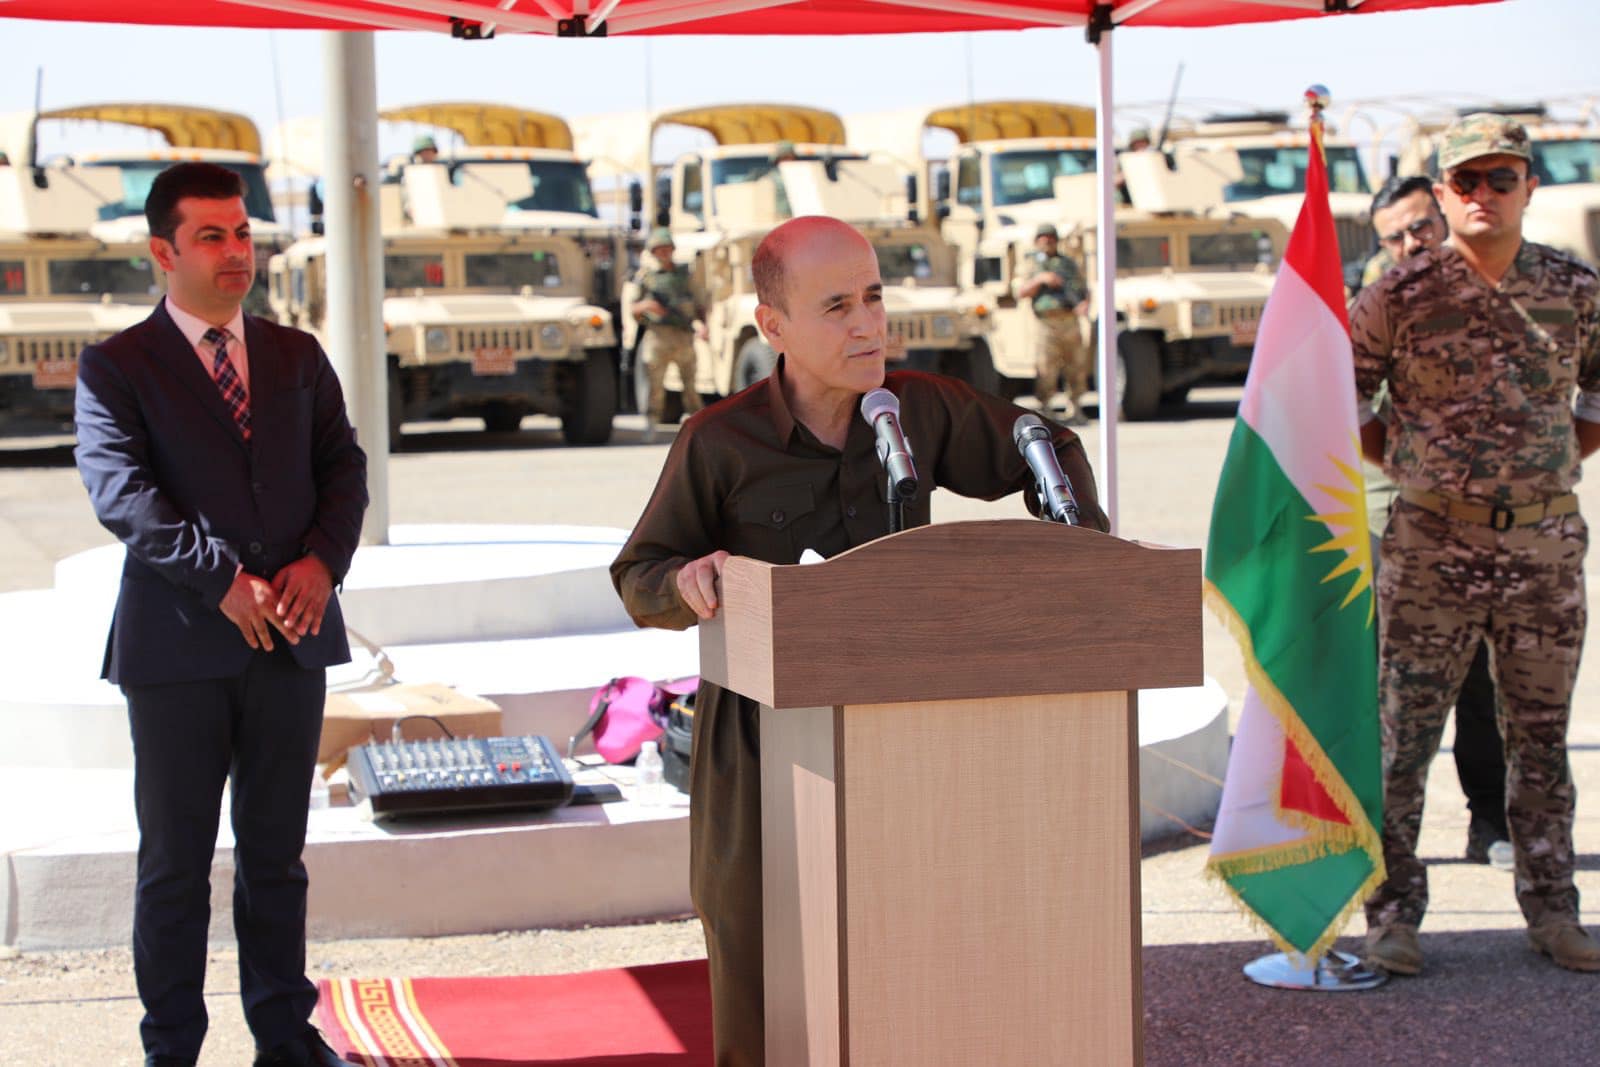 وزير البيشمركة يعلن تعزيز الثقة مع الجيش العراقي و يدعو لفتح باب التجنيد لـ"تجديد الدماء"